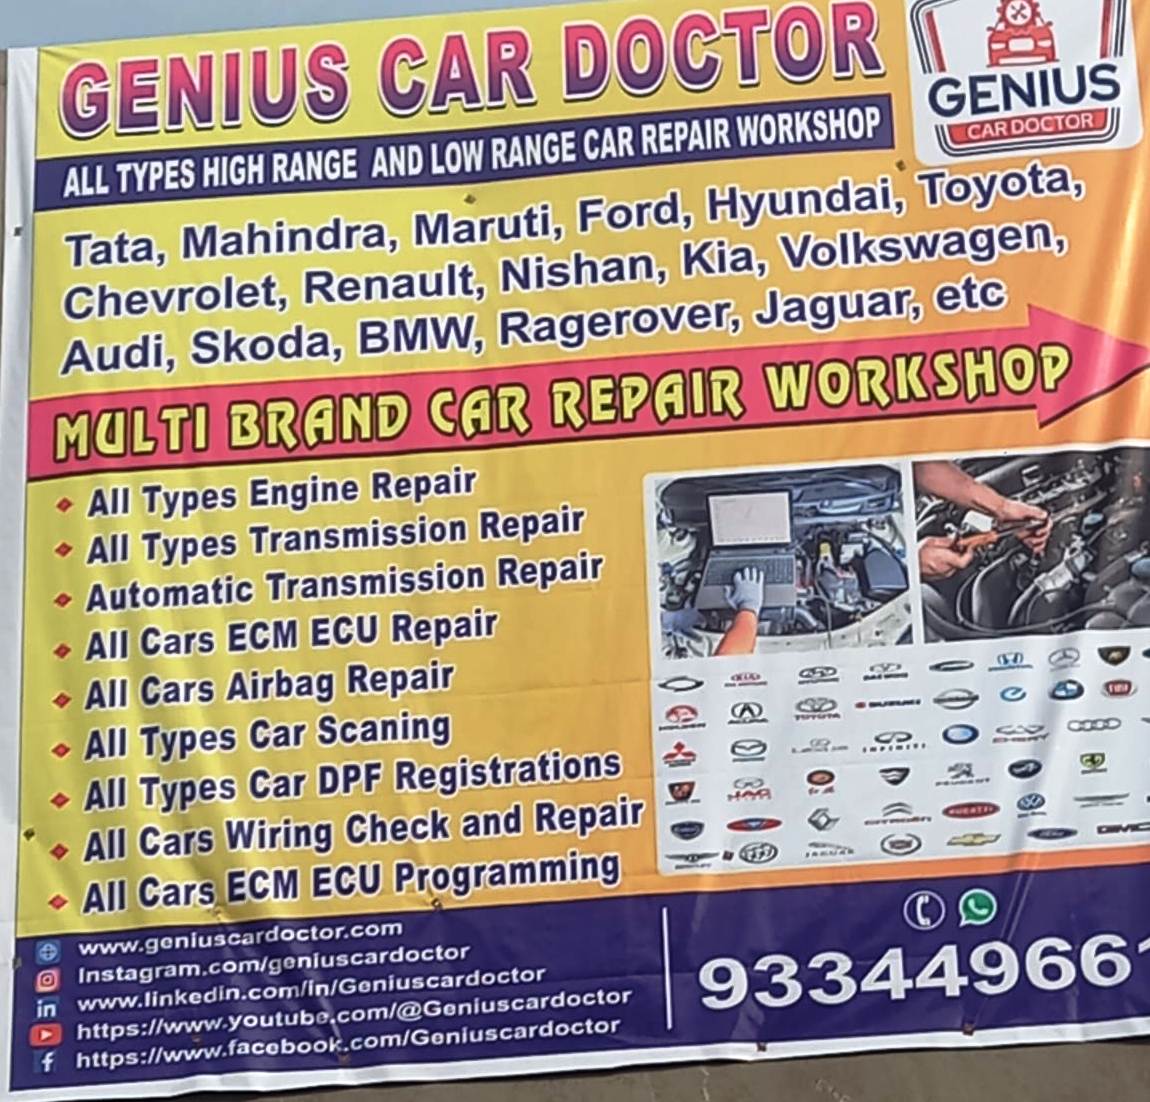 GENIUS CAR DOCTOR IN RANCHI 9334496615 